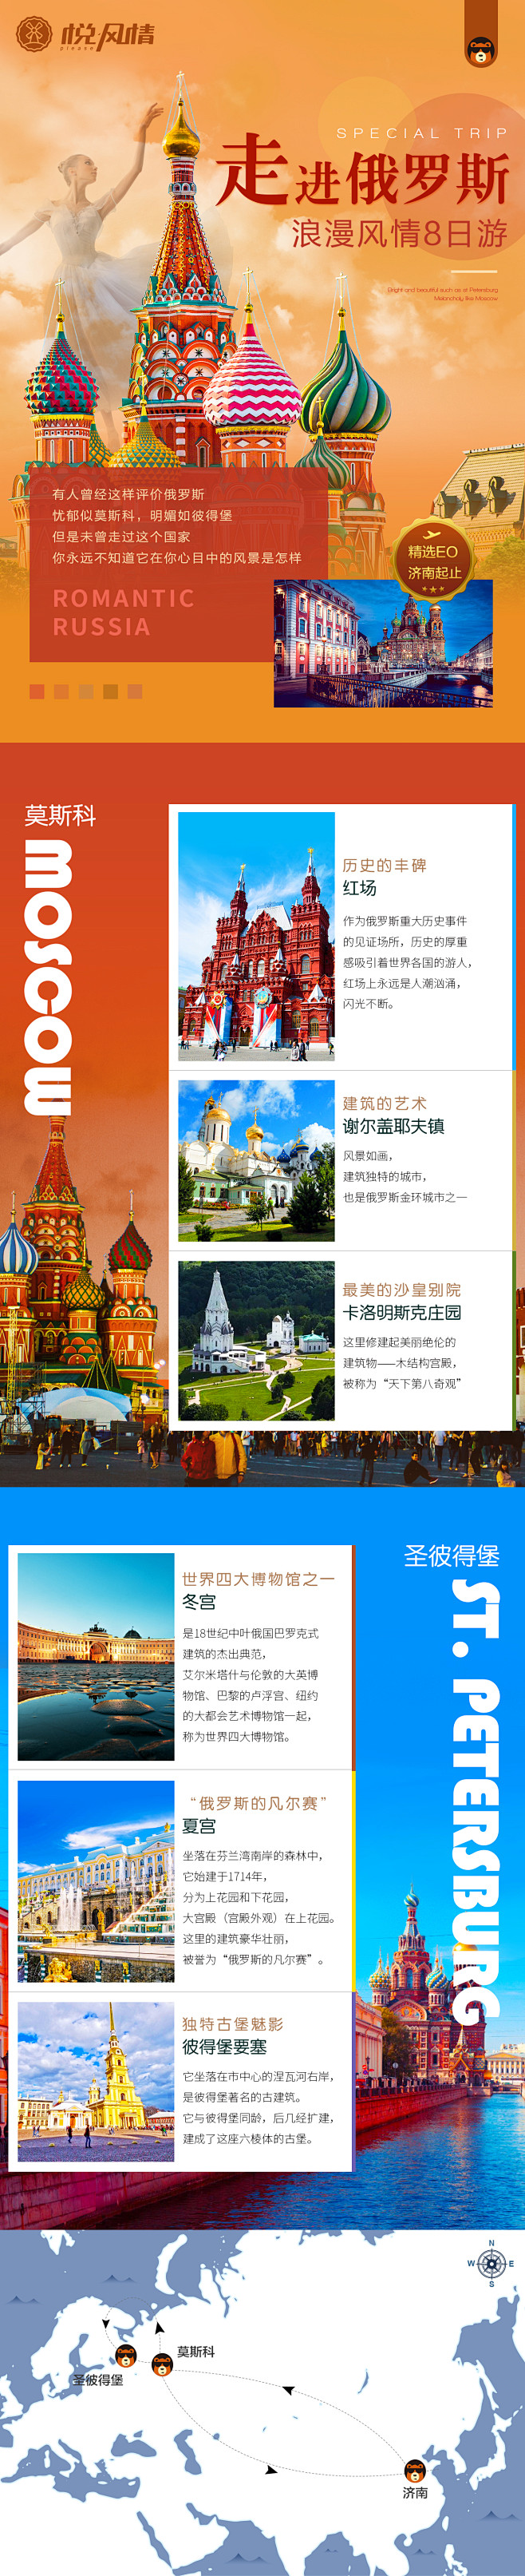 九州风行-俄罗斯旅游单页 行程 微信宣传...